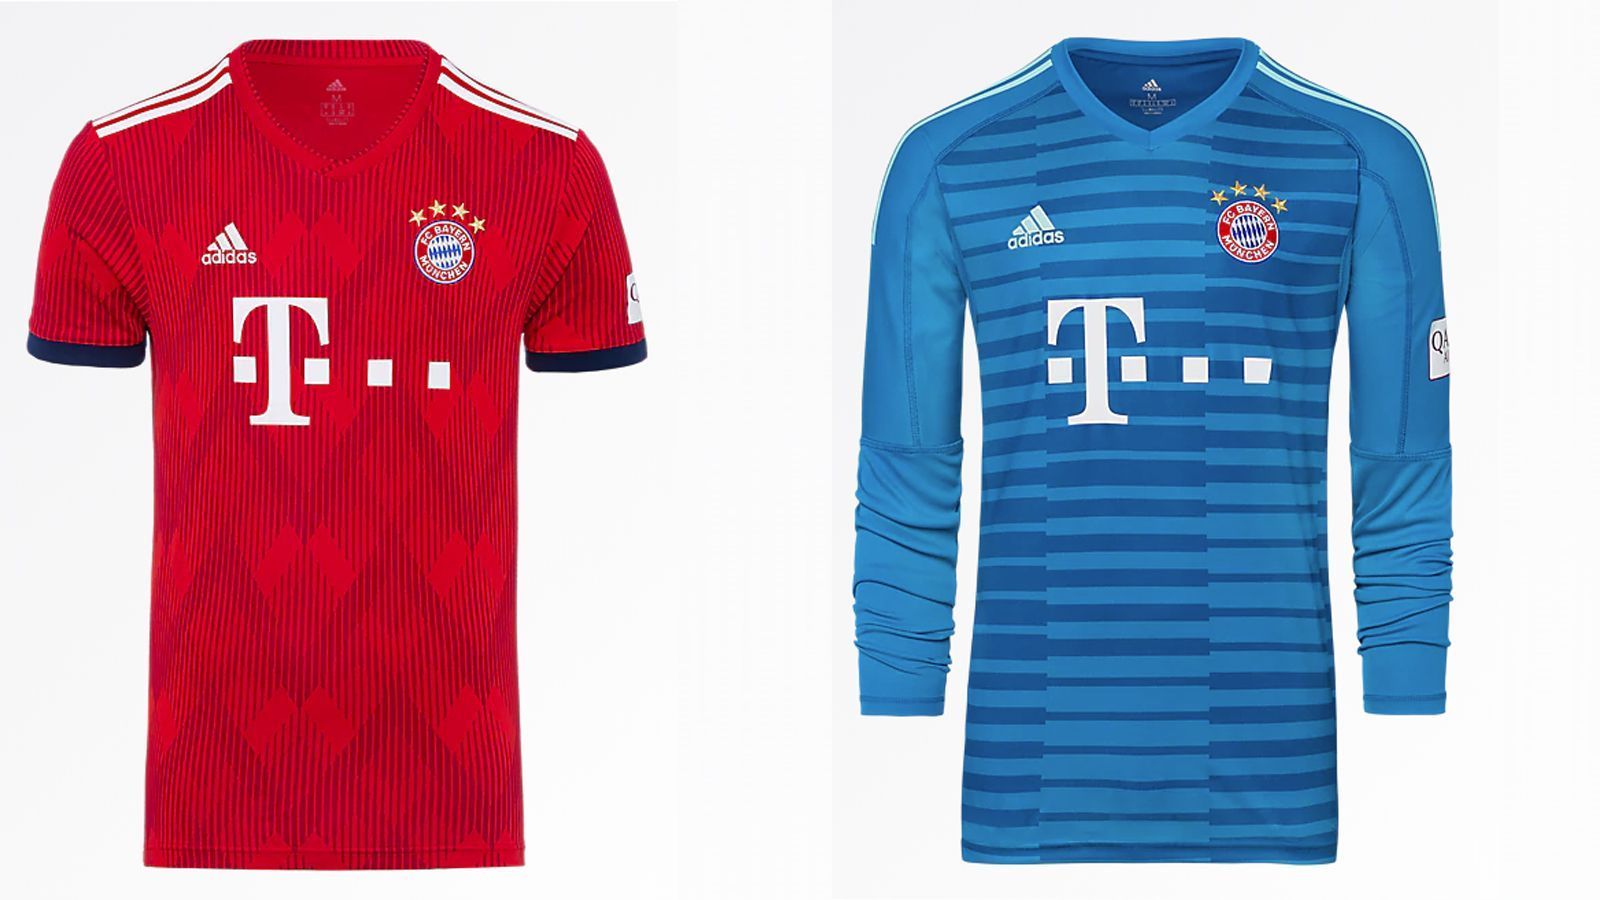 
                <strong>FC Bayern</strong><br>
                Das neue Bayern-Trikot ist wieder von rot geprägt. Das Muster erinnert an die bayrischen Rauten. Manuel Neuer darf hingegen in einem Streifenmuster auflaufen.
              